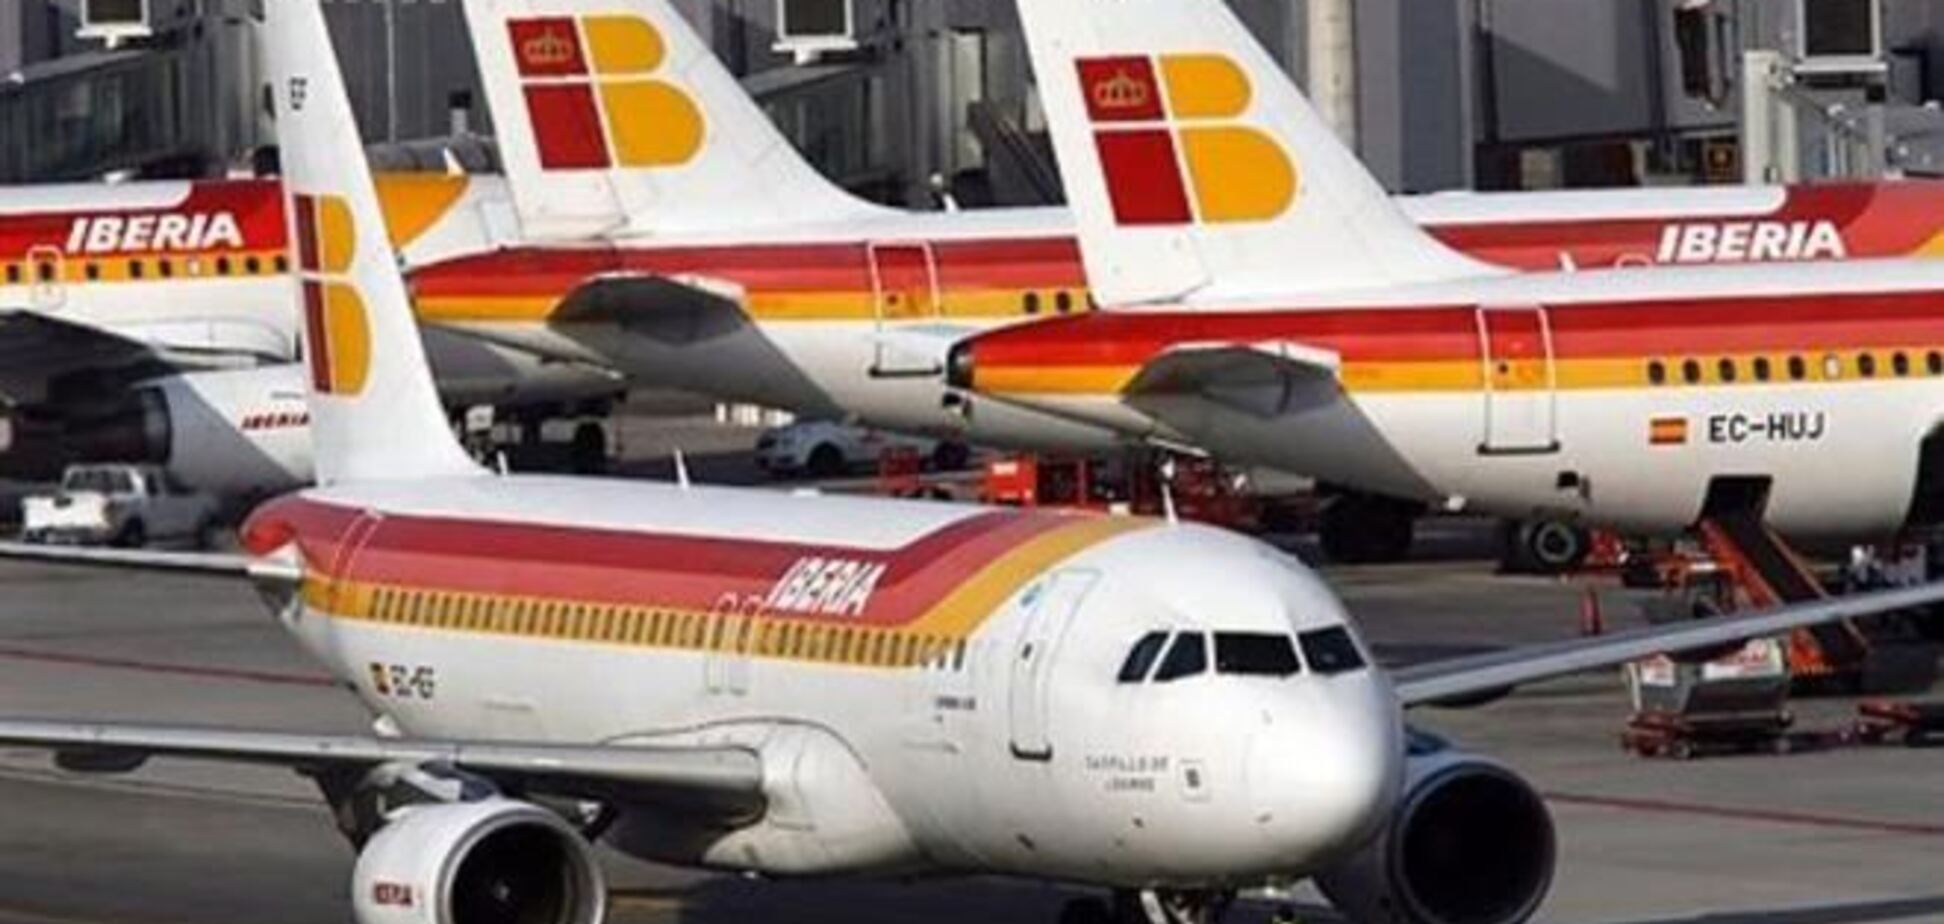 Авиакомпания Iberia делает ставку на продажу билетов в интернете  